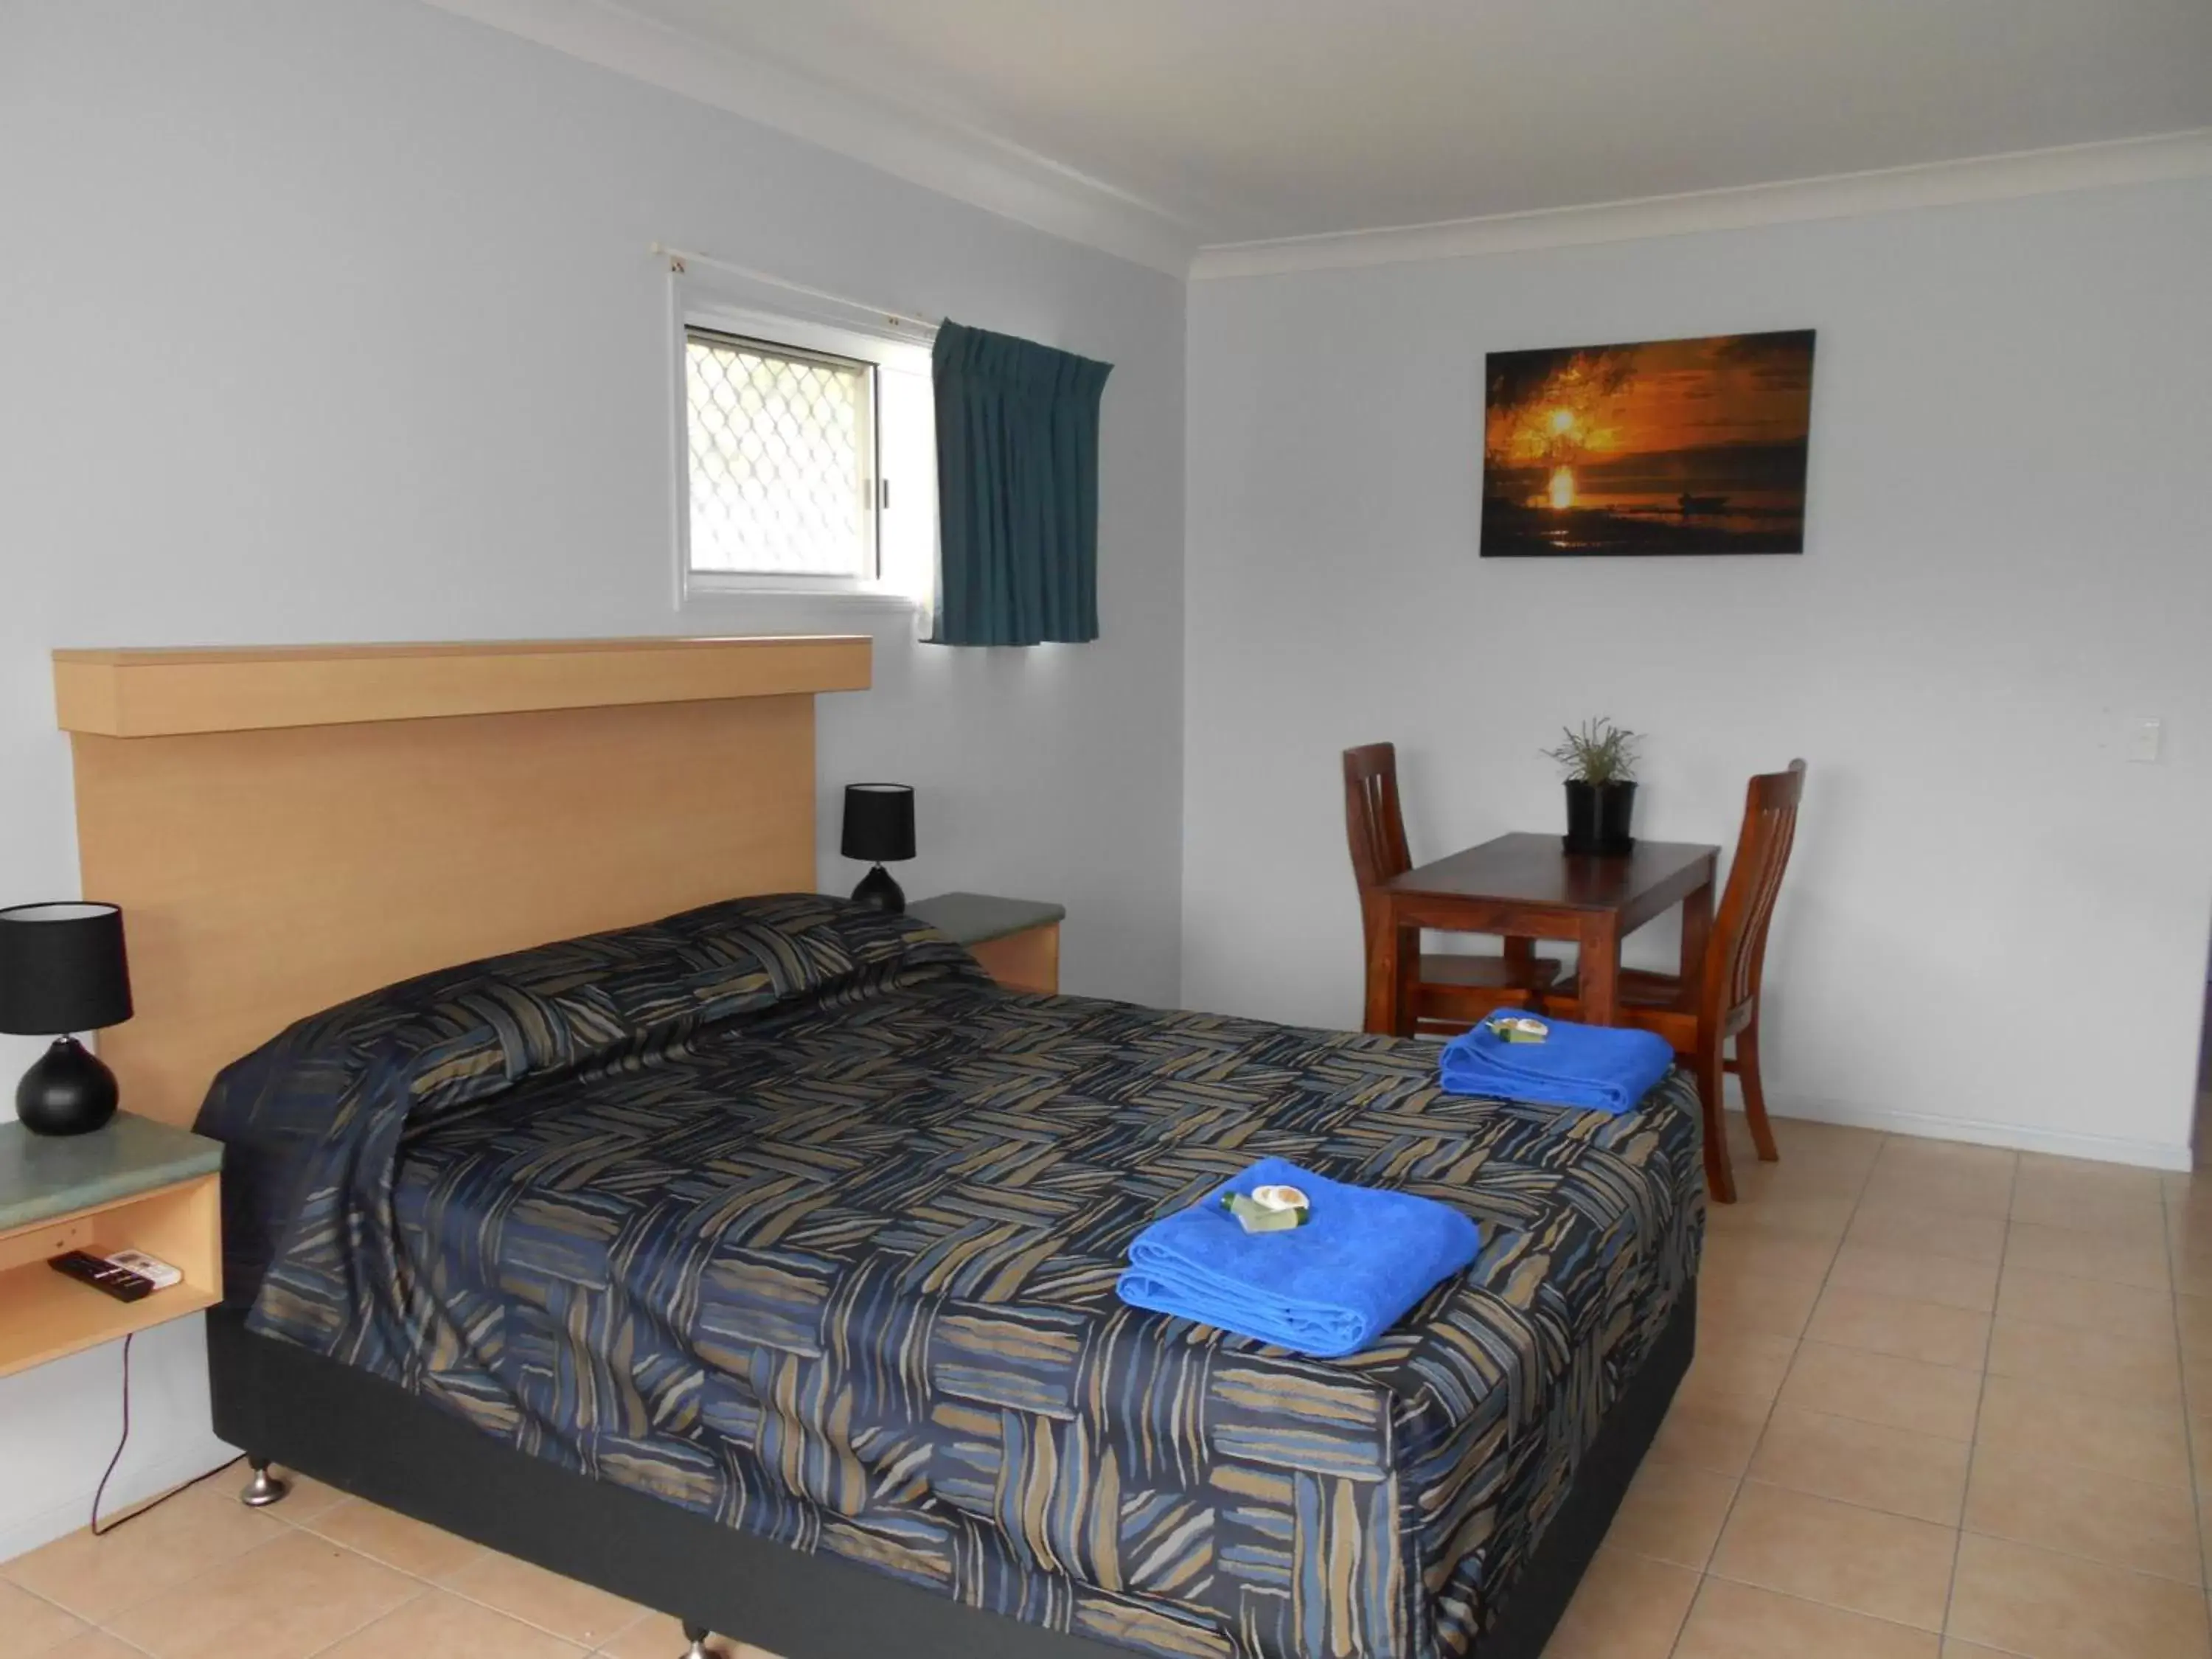 Bed in TI Motel Torres Strait